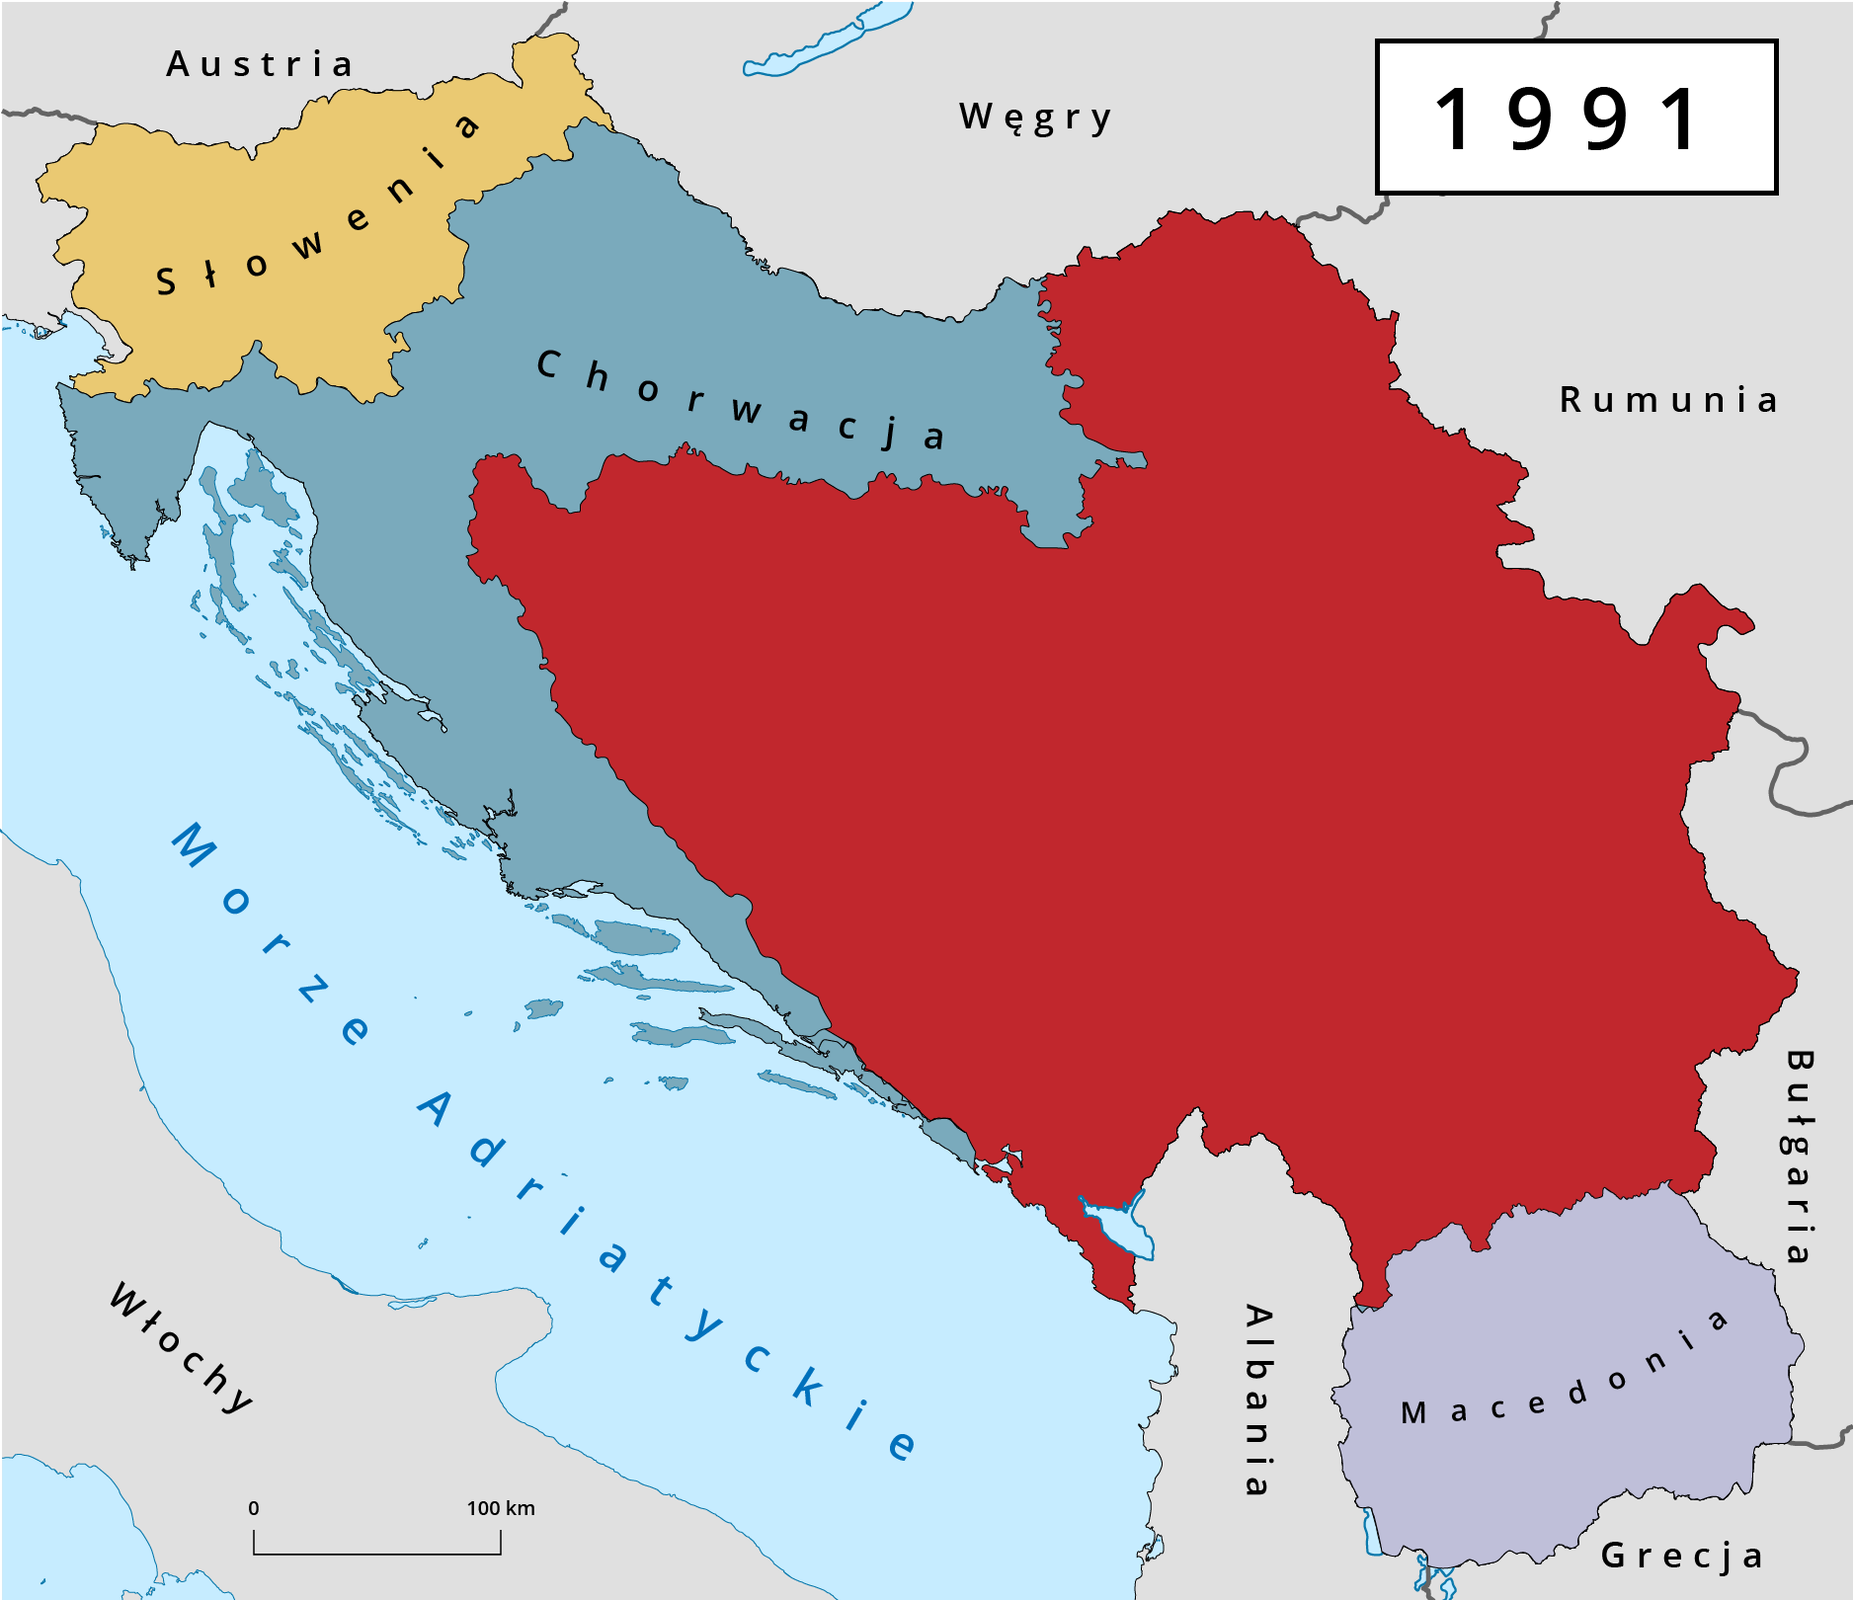 Mapa przedstawia państwa powstałe po rozpadzie Jugosławii w 1991 roku. Z północnych terenów tego kraju wyodrębniła się Słowenia oraz Chorwacja. Chorwacja przejęła dużą ilość ziem nad Morzem Adriatyckim, z kolei Słowenia tereny nieco bardziej na północ. Na południu, przy granicach z Bułgarią, Grecją oraz Albanią powstała Macedonia. W centrum mapy znajduje się pozostała po rozpadzie część Jugoławii.